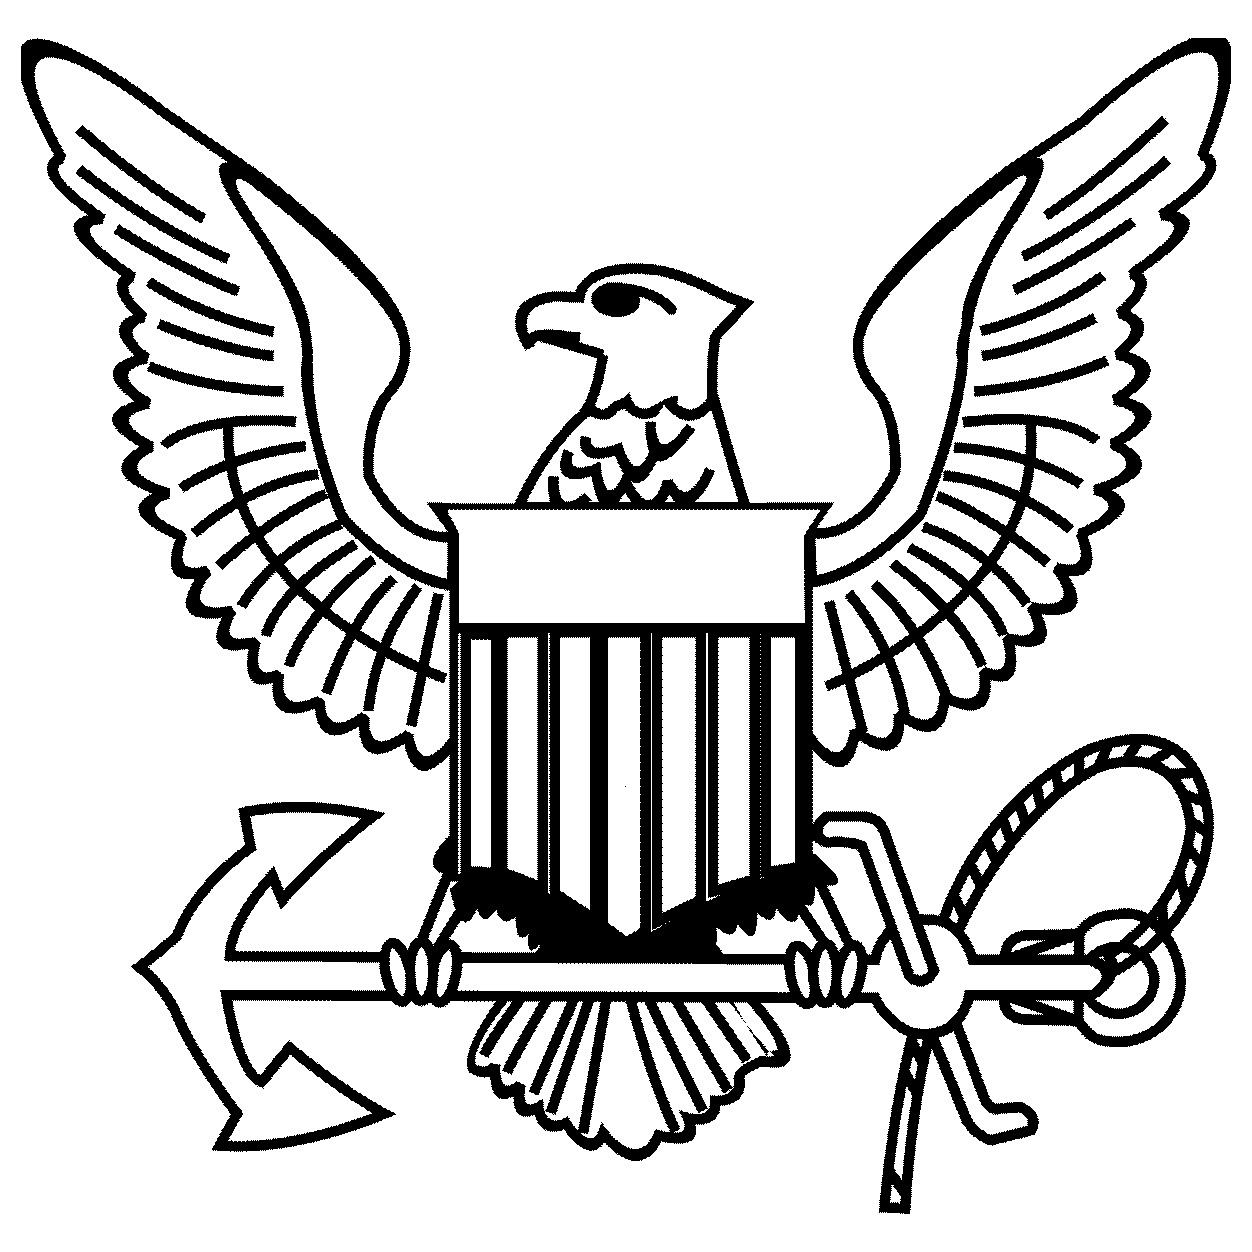 navy anchor logo with eagle